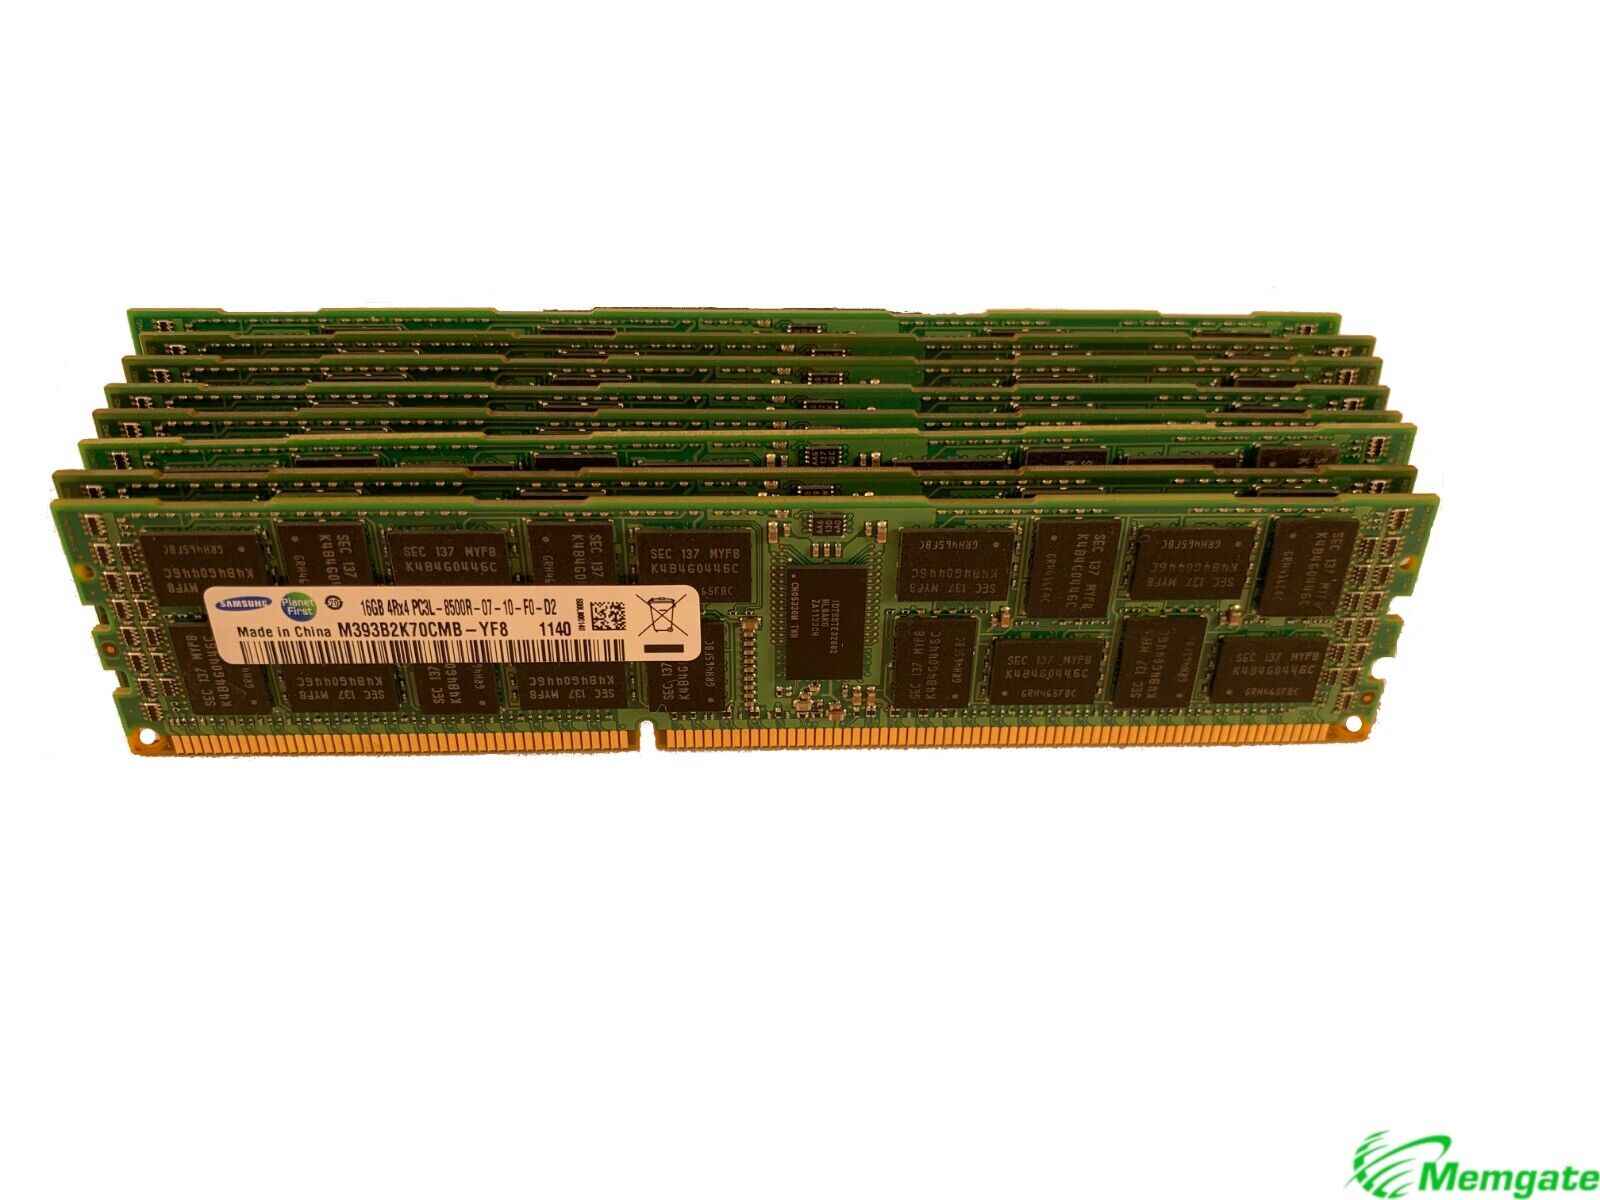 96GB (6 x16GB) Memory For Dell PowerEdge R520 R5500 R610 R620 R710 R715